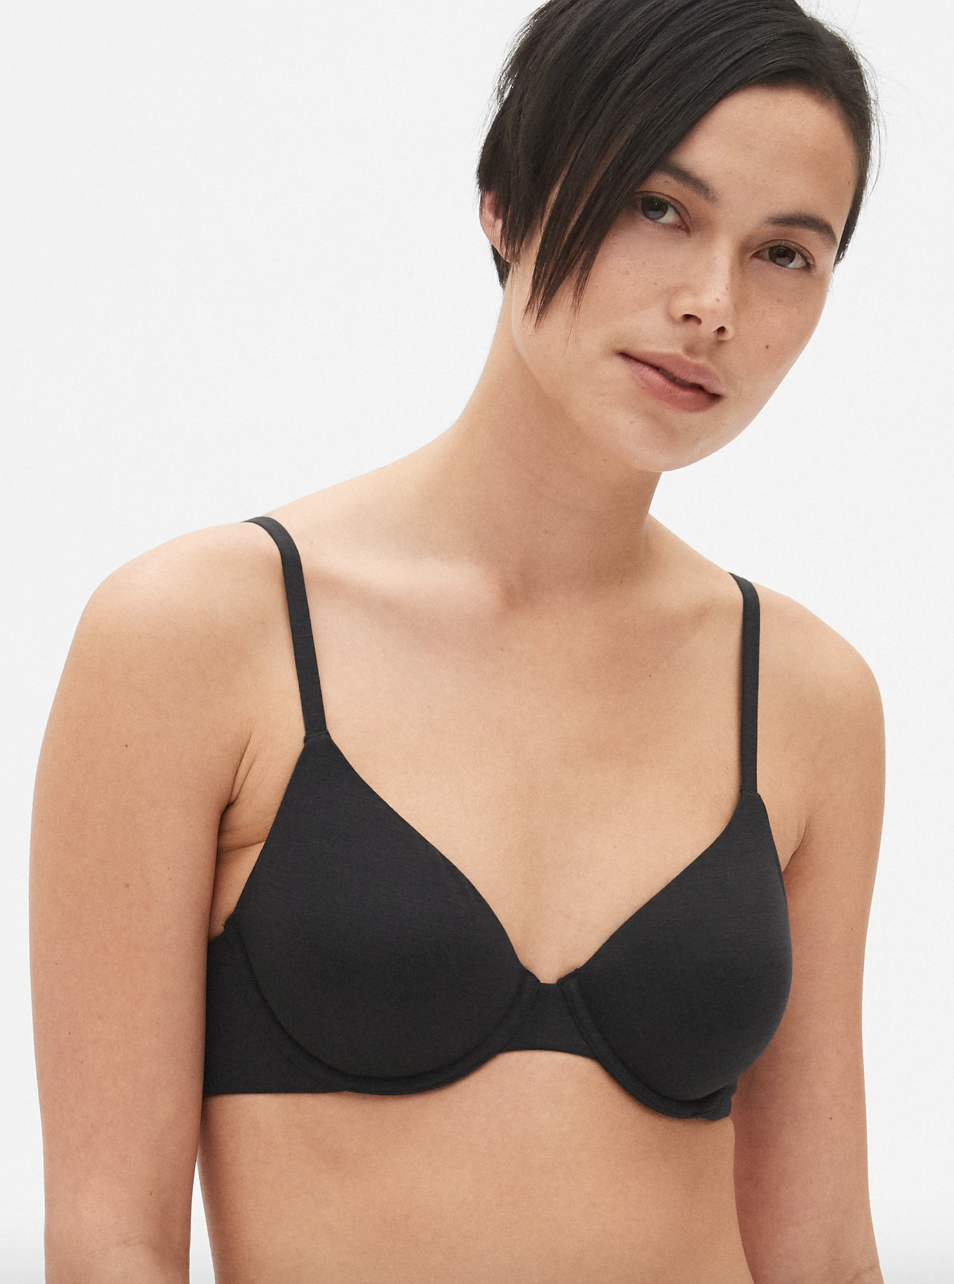 model wearing the black bra